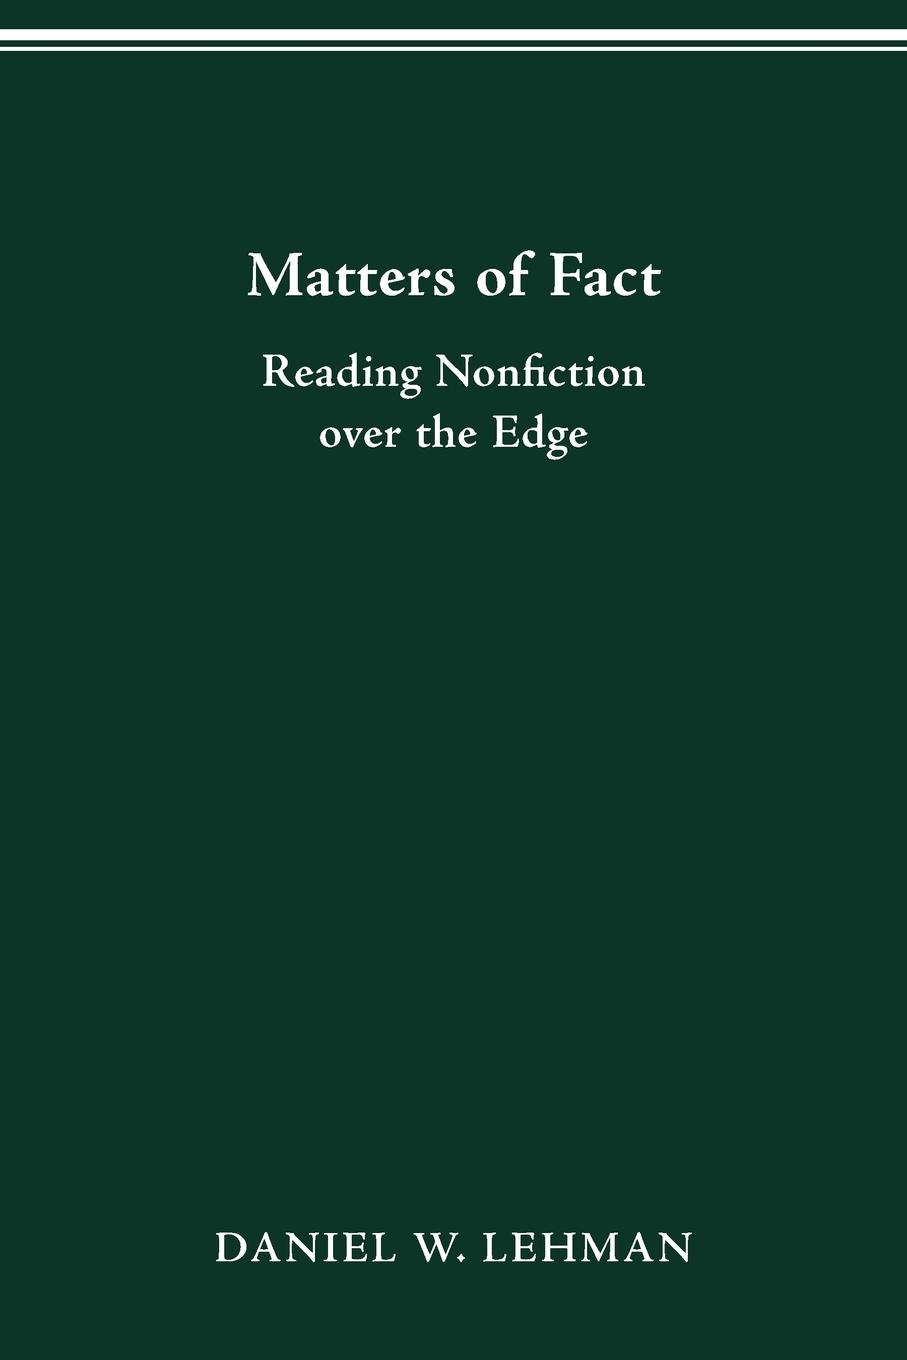 MATTERS OF FACT - Lehman, Daniel W.